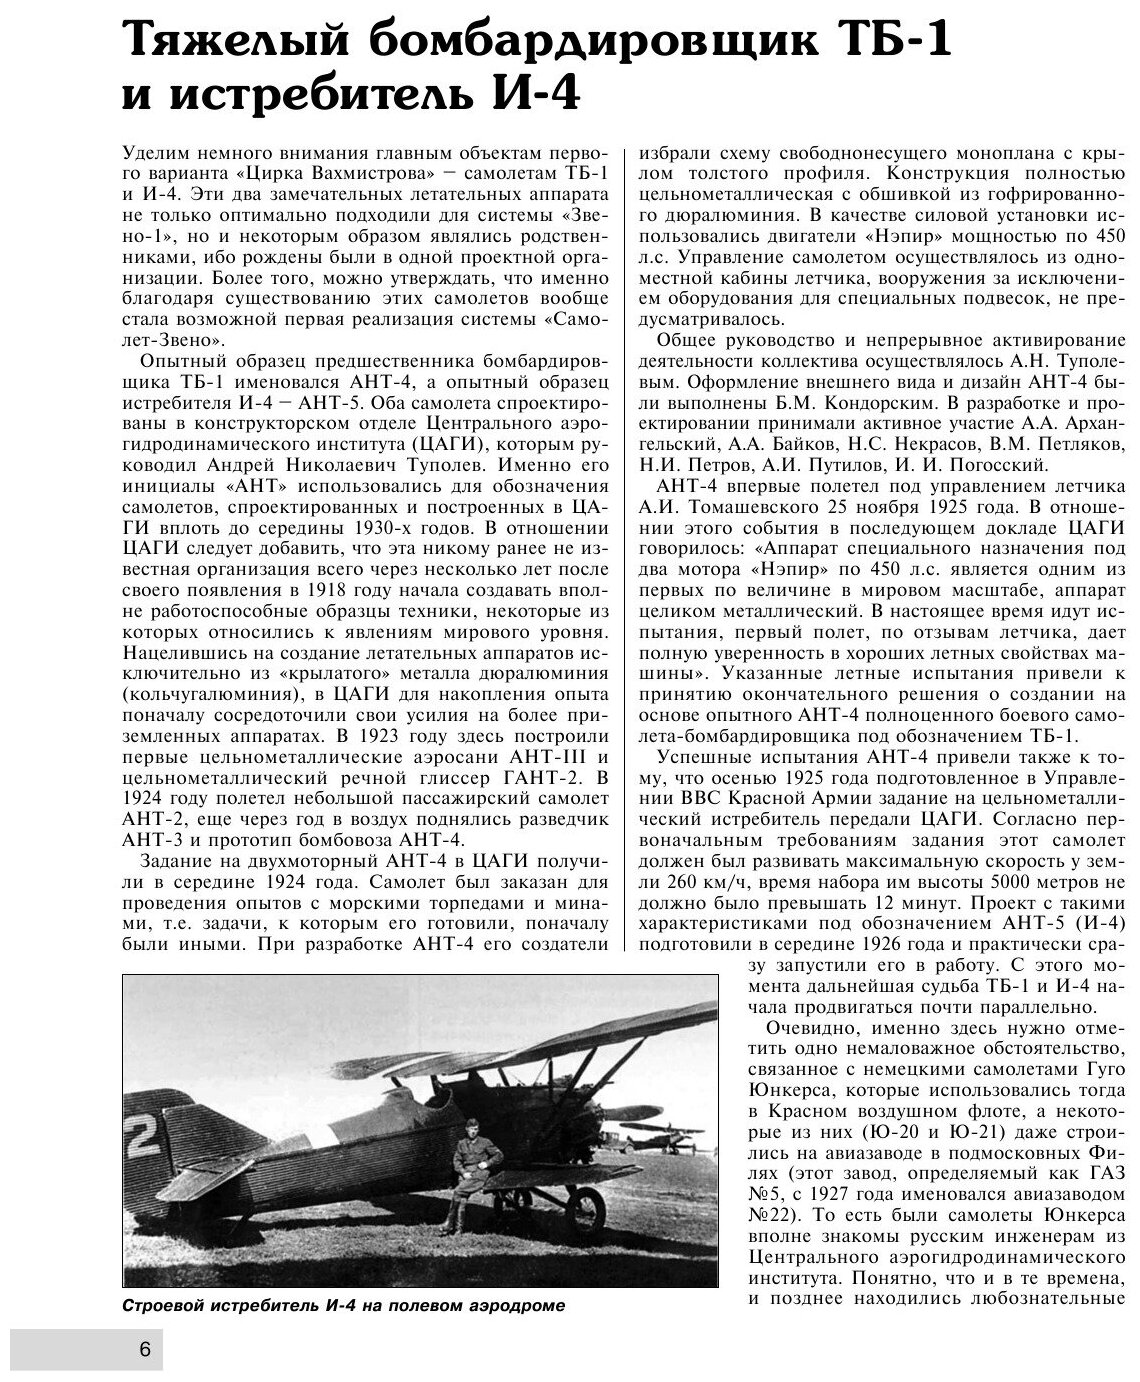 Летающие авианосцы Сталина. Все модификации и проекты «Звена» Вахмистрова - фото №7